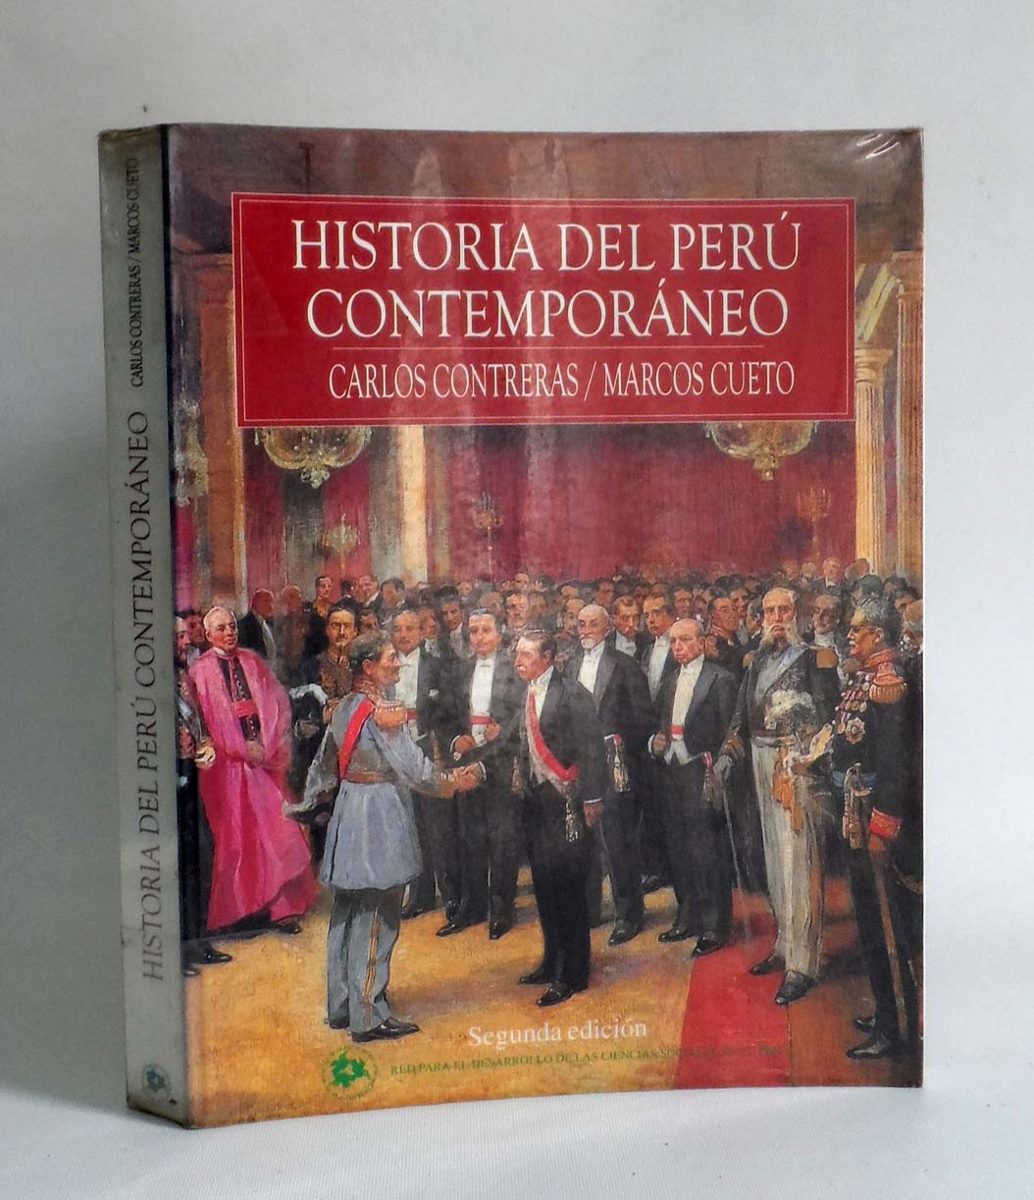 Historia del peru contemporaneo carlos contreras y marcos cueto pdf gratis